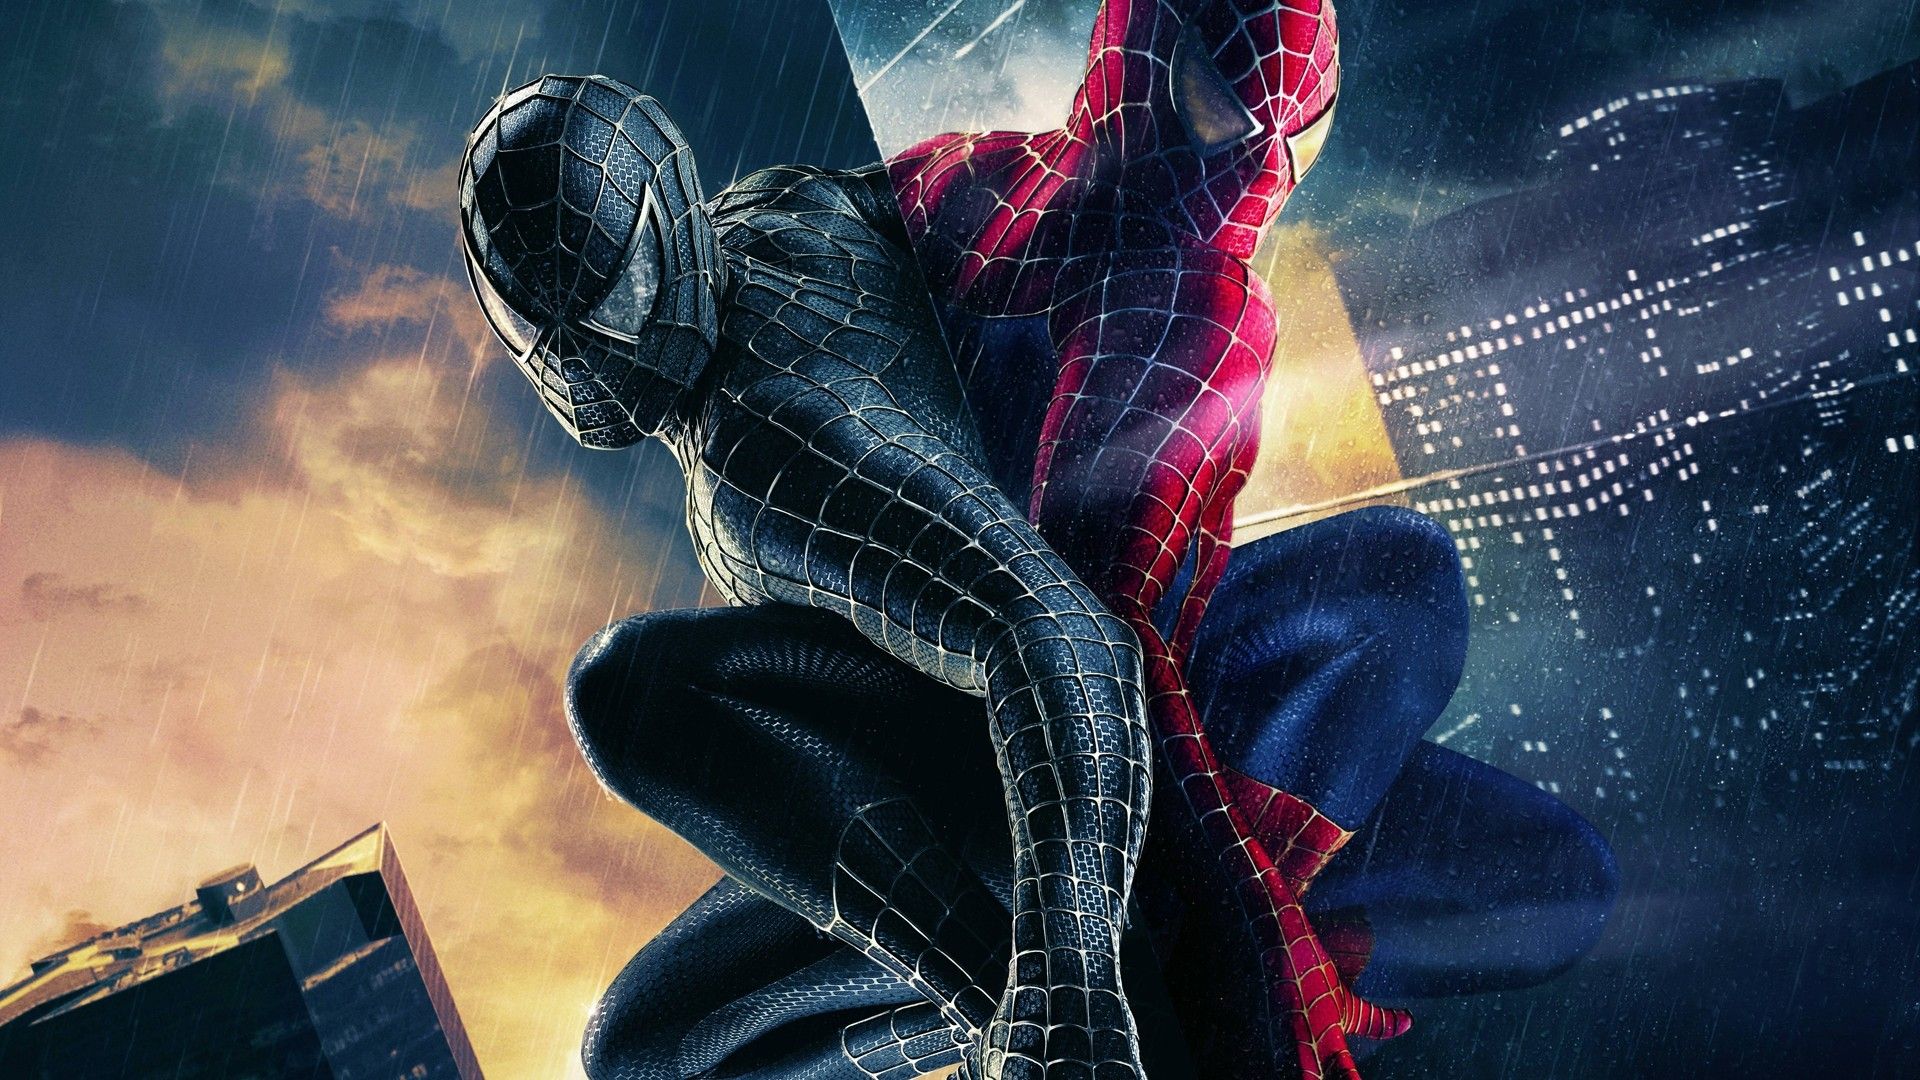 Best Spider Man Wallpaper Download - Spider Man Wallpaper Enjpg - They